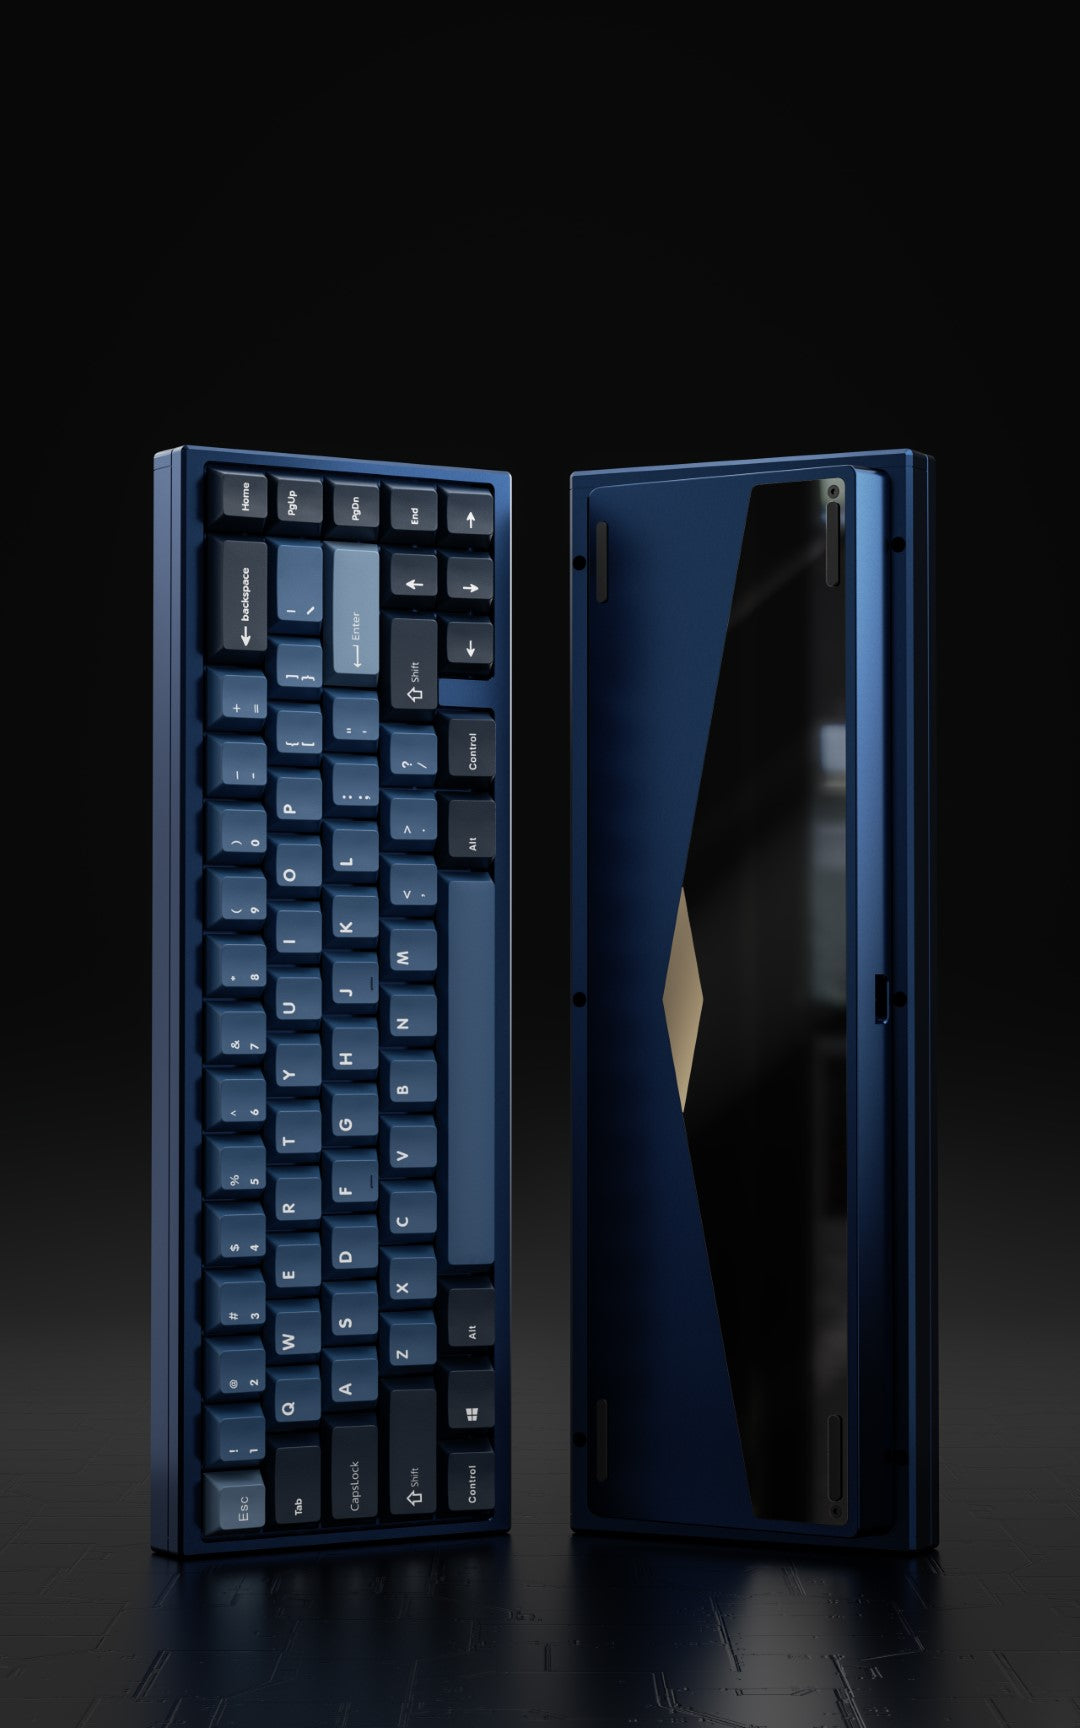 Choice65 -  Premium 65% Keyboard [Group Buy]